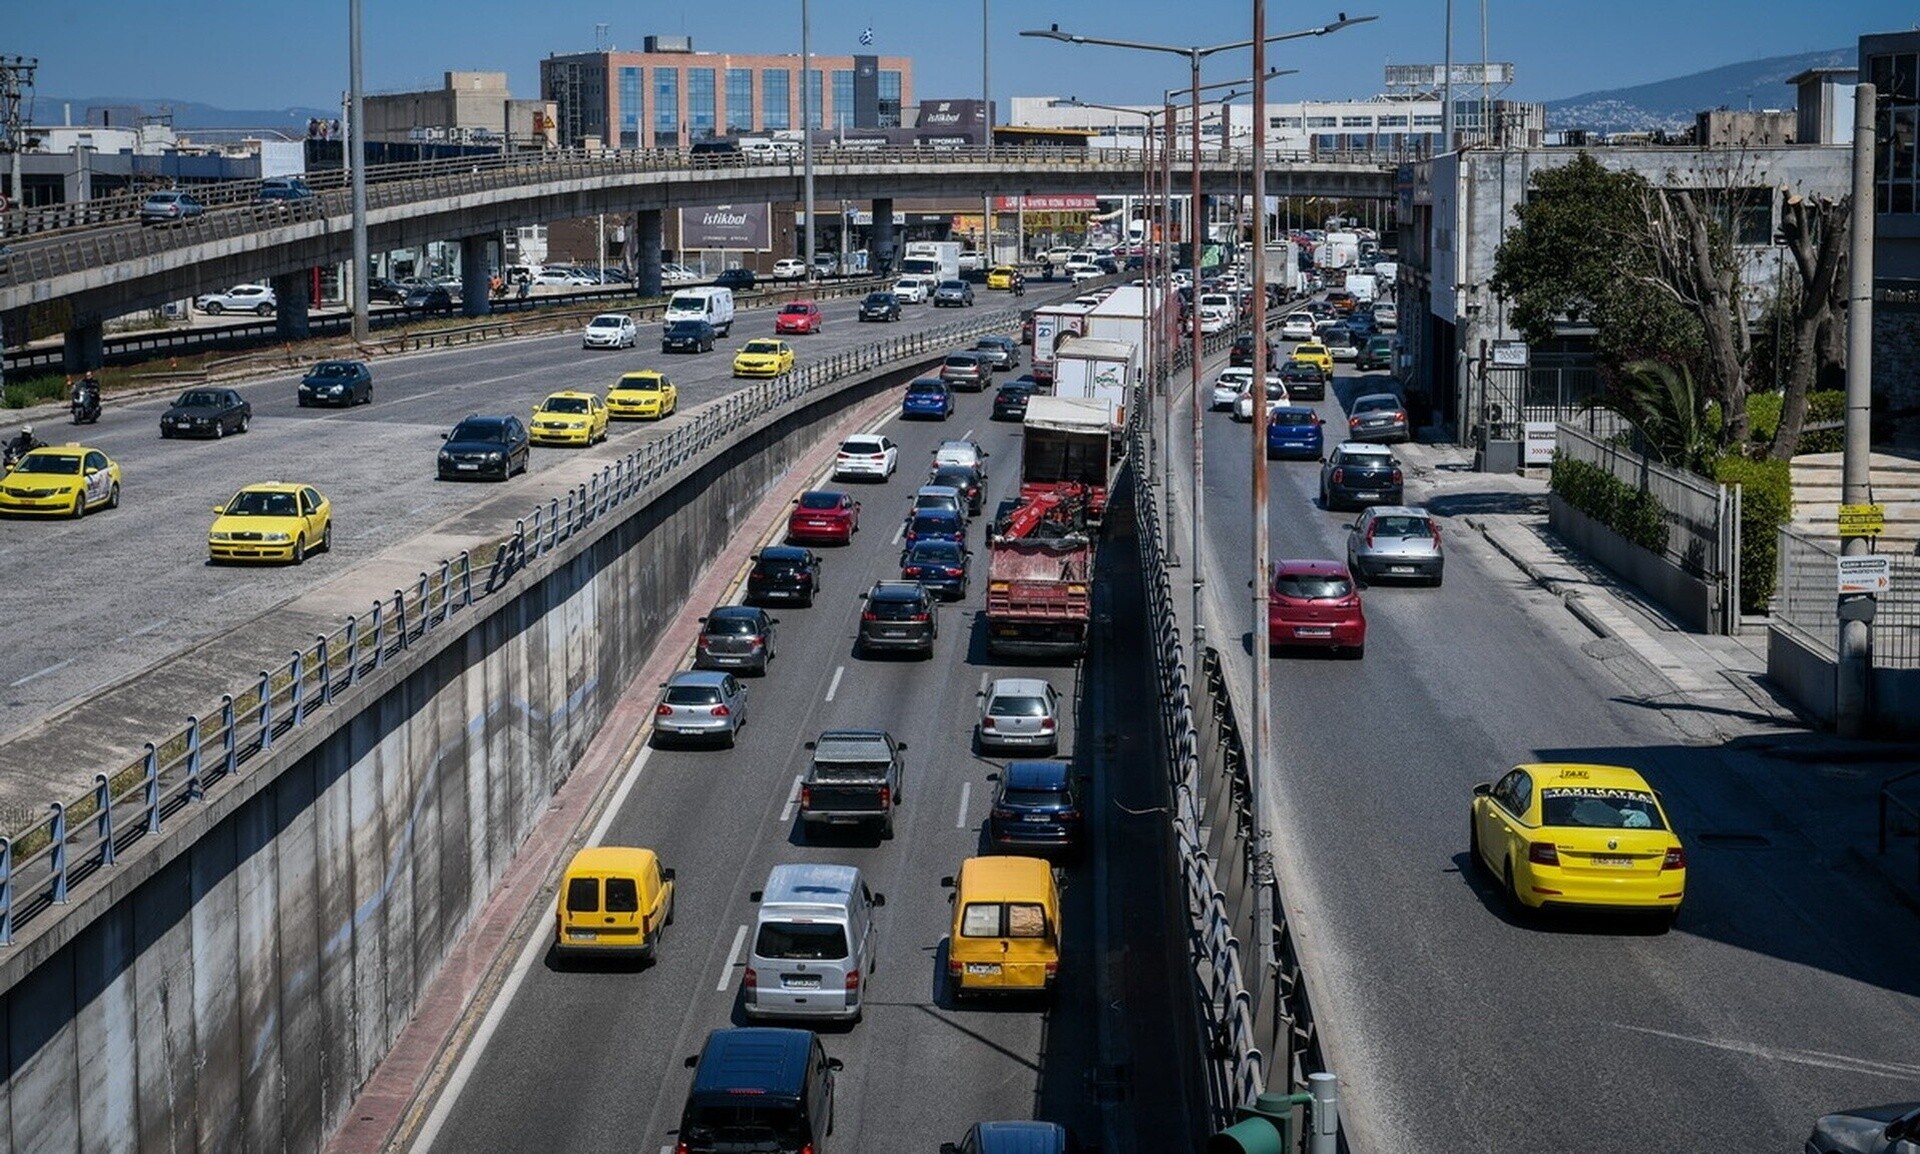 Κίνηση τώρα: Σε ποιους δρόμους παρατηρούνται προβλήματα στην κυκλοφορία - Δείτε τα σημεία